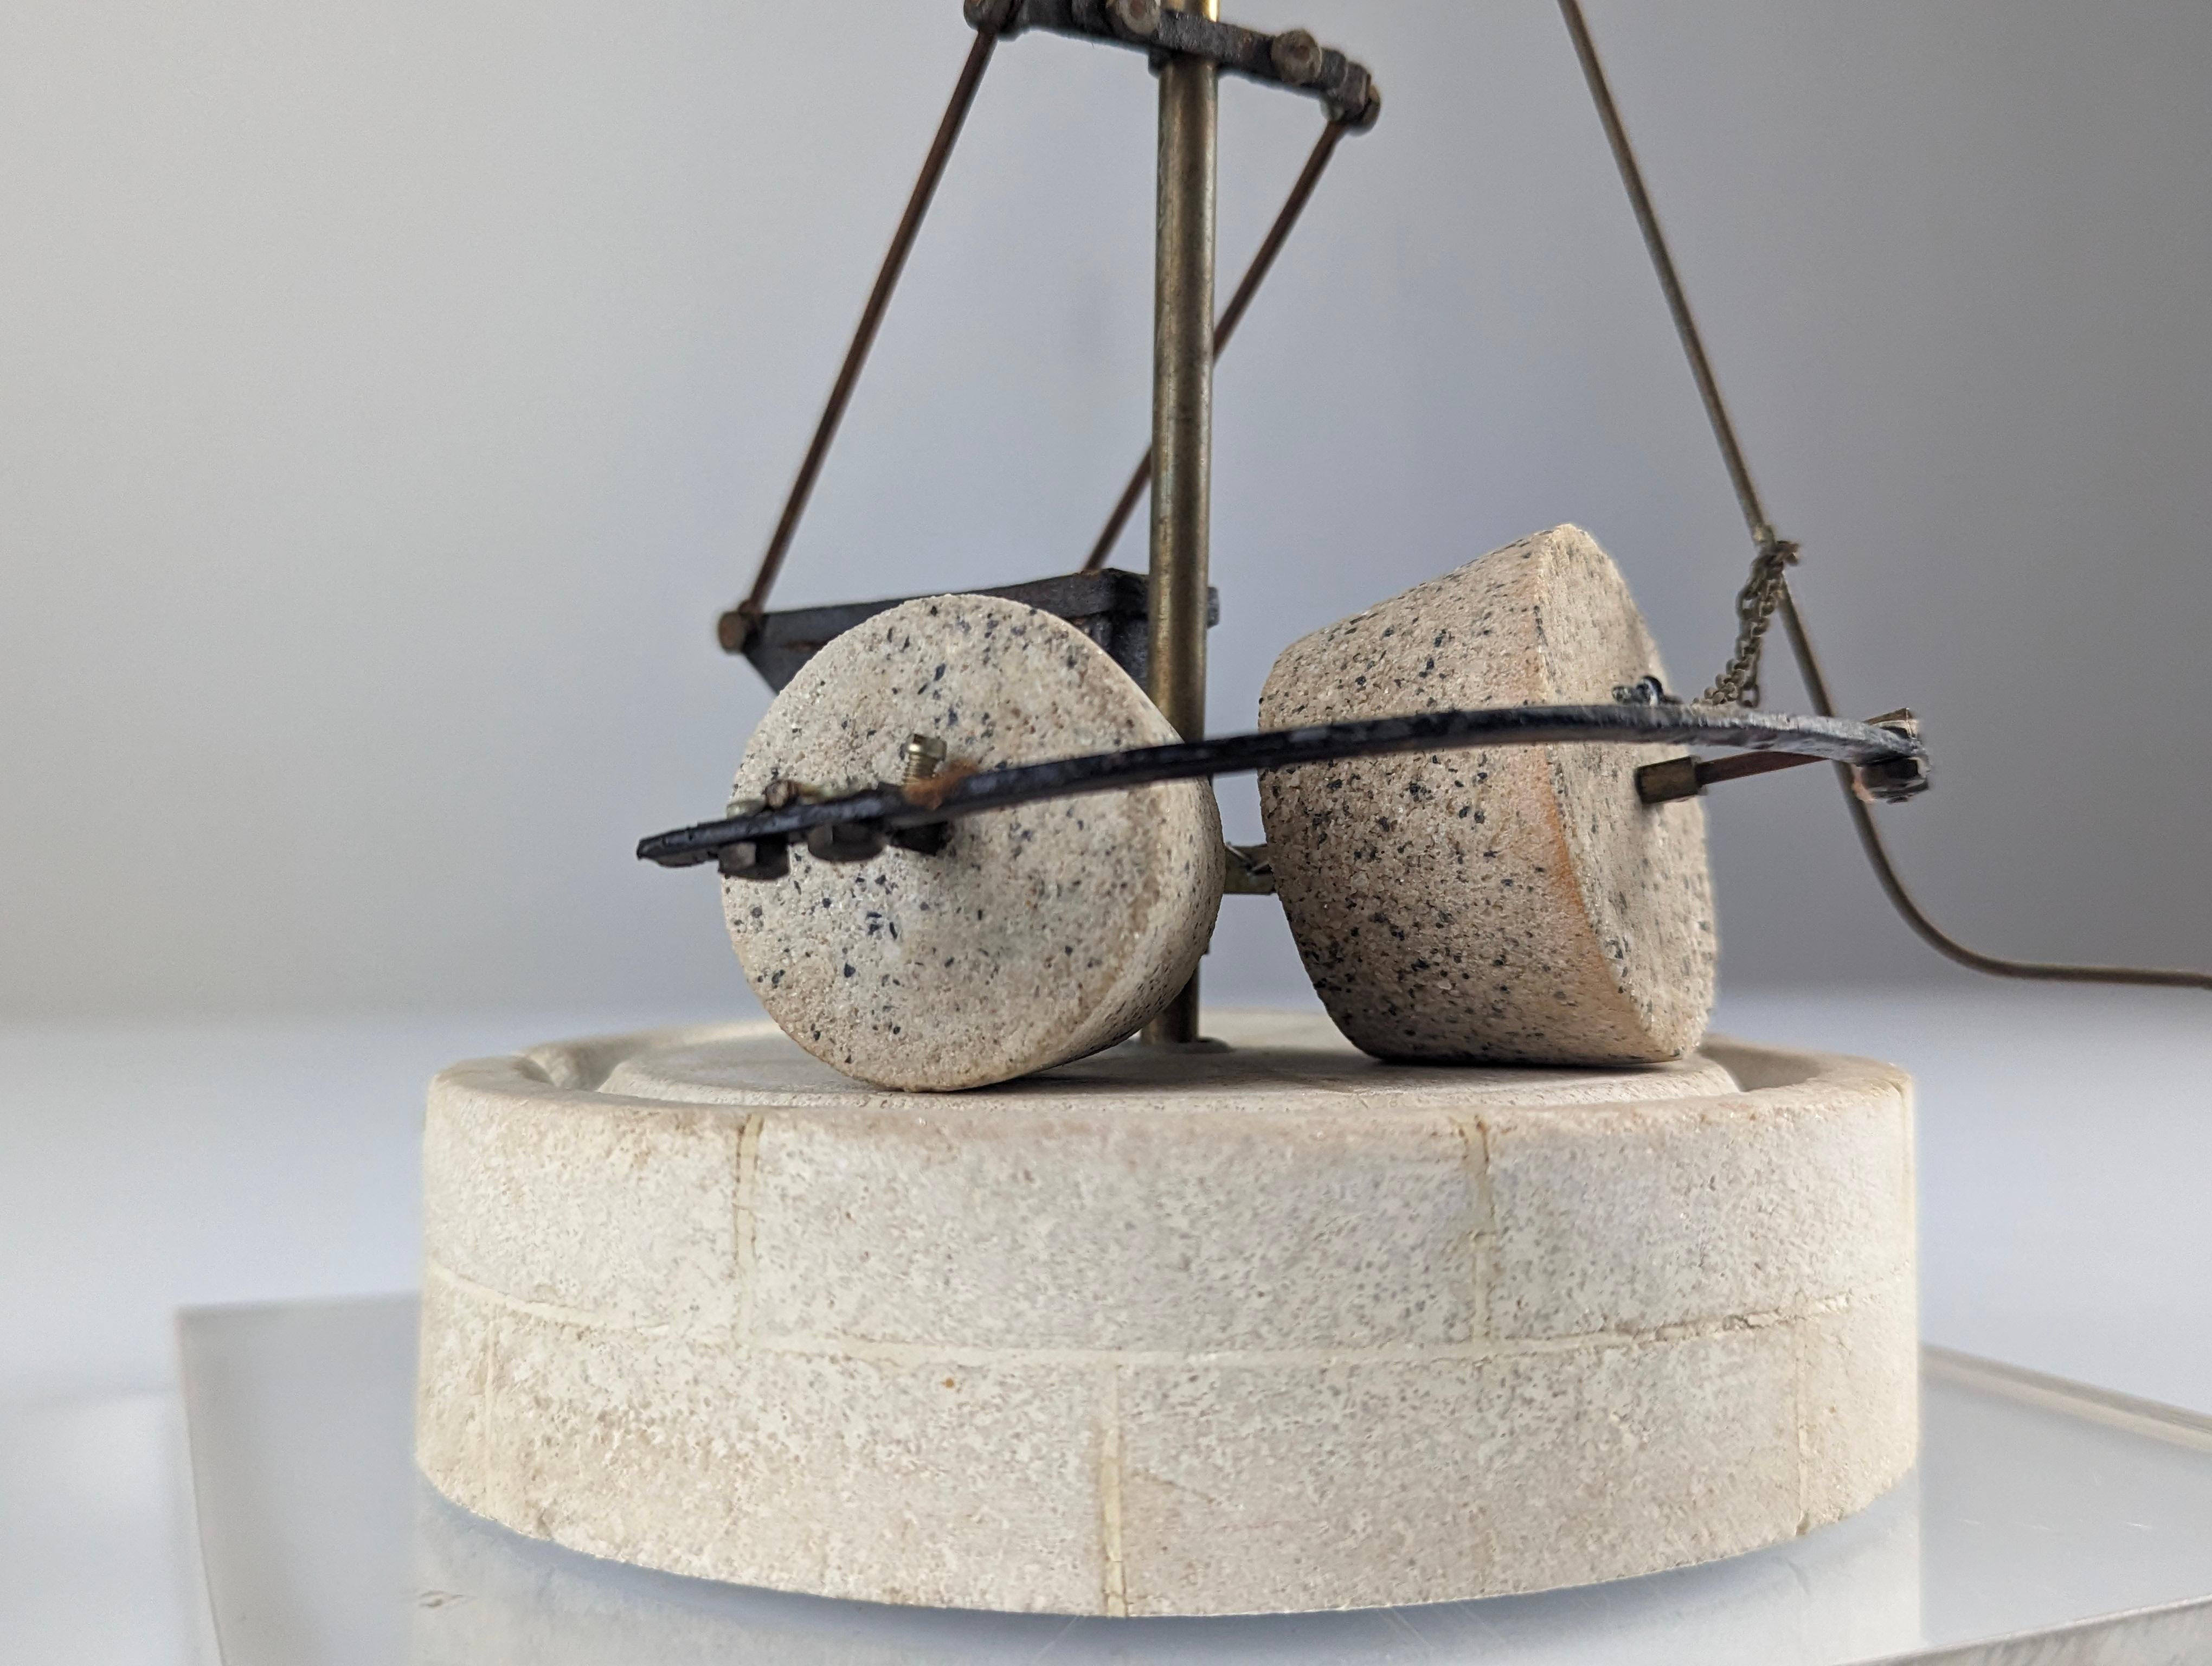 Maßstabsgetreues Modell einer alten steinernen Ölmühle, hergestellt aus Naturstein und Metall auf einem Methacrylatsockel. Das Stück ist voll funktionsfähig und drehbar. Vollständig datiert auf dem inneren Sockel.